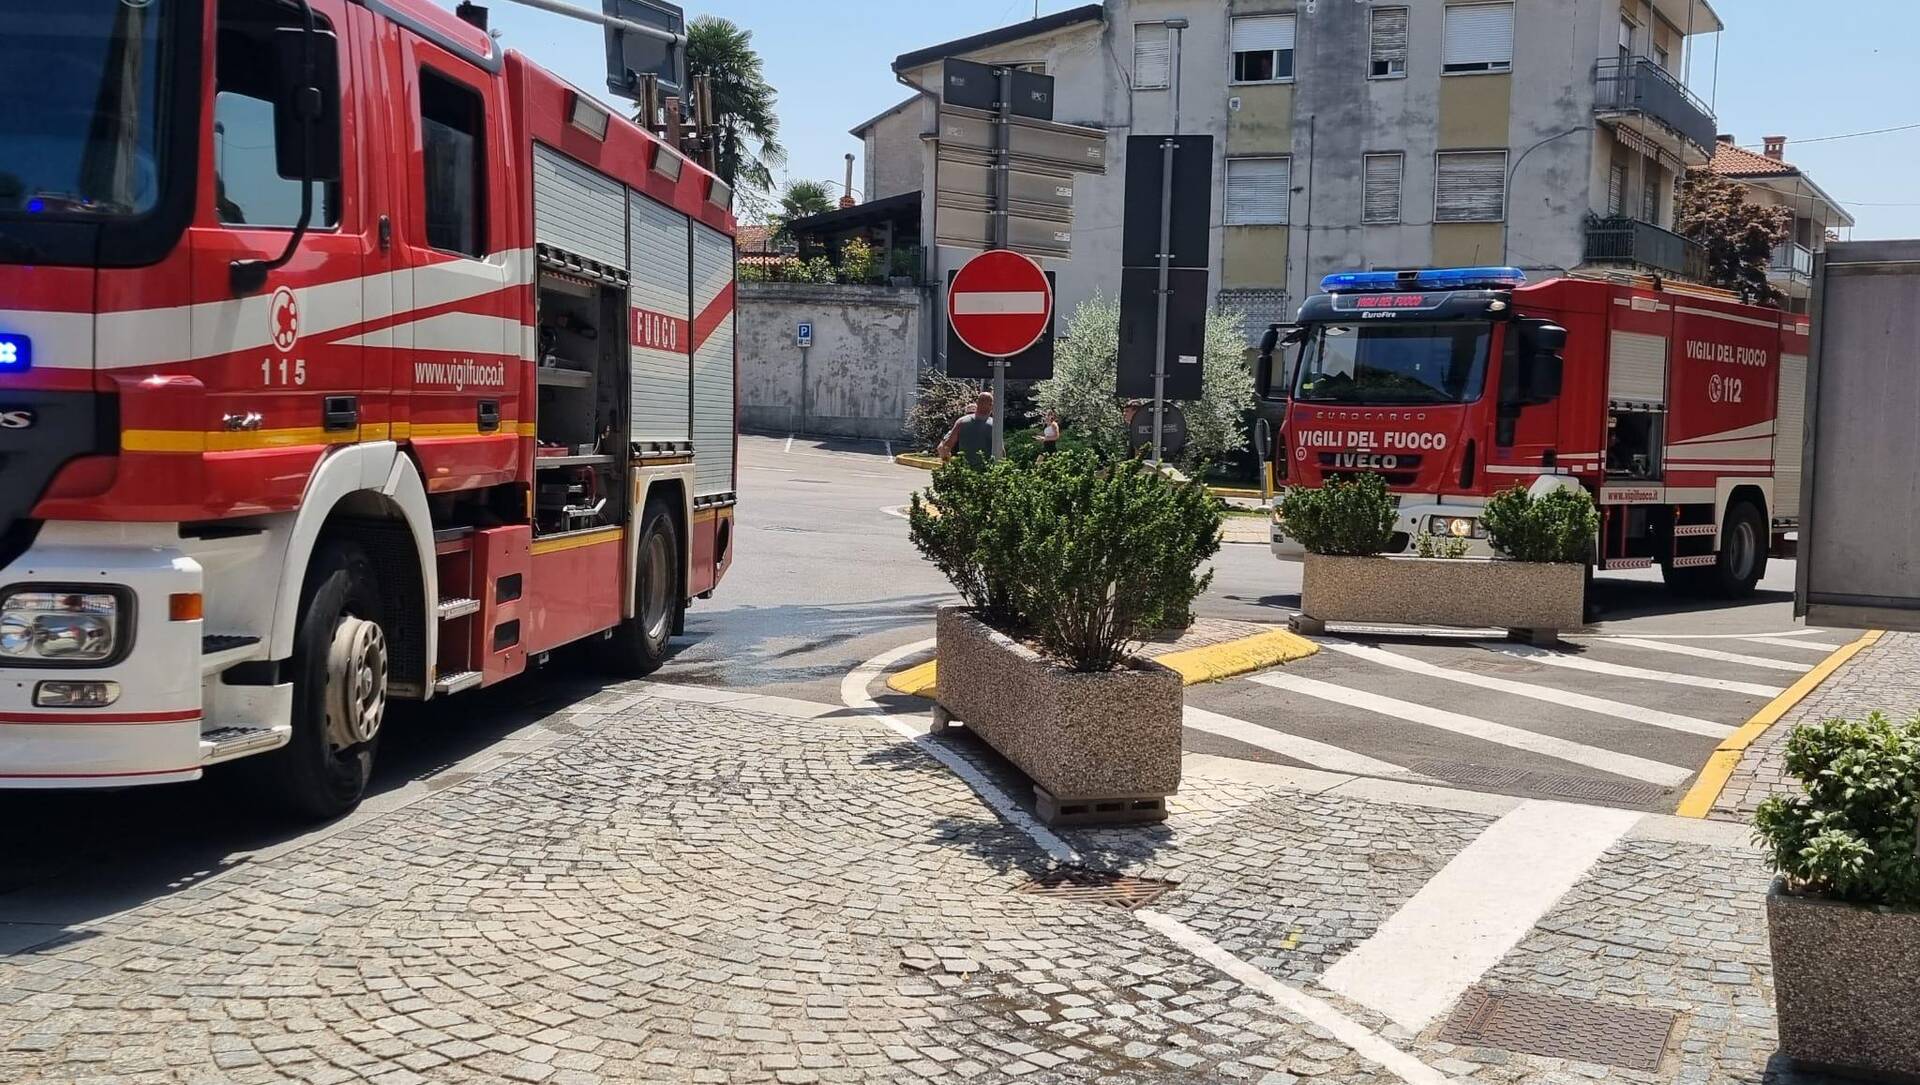 Ieri a Saronno: tir contro auto in A8, incendio panificio. La scomparsa di Perego. Avvistato tarabusino. Tentato furto cane. Via i murales all’ex Isotta